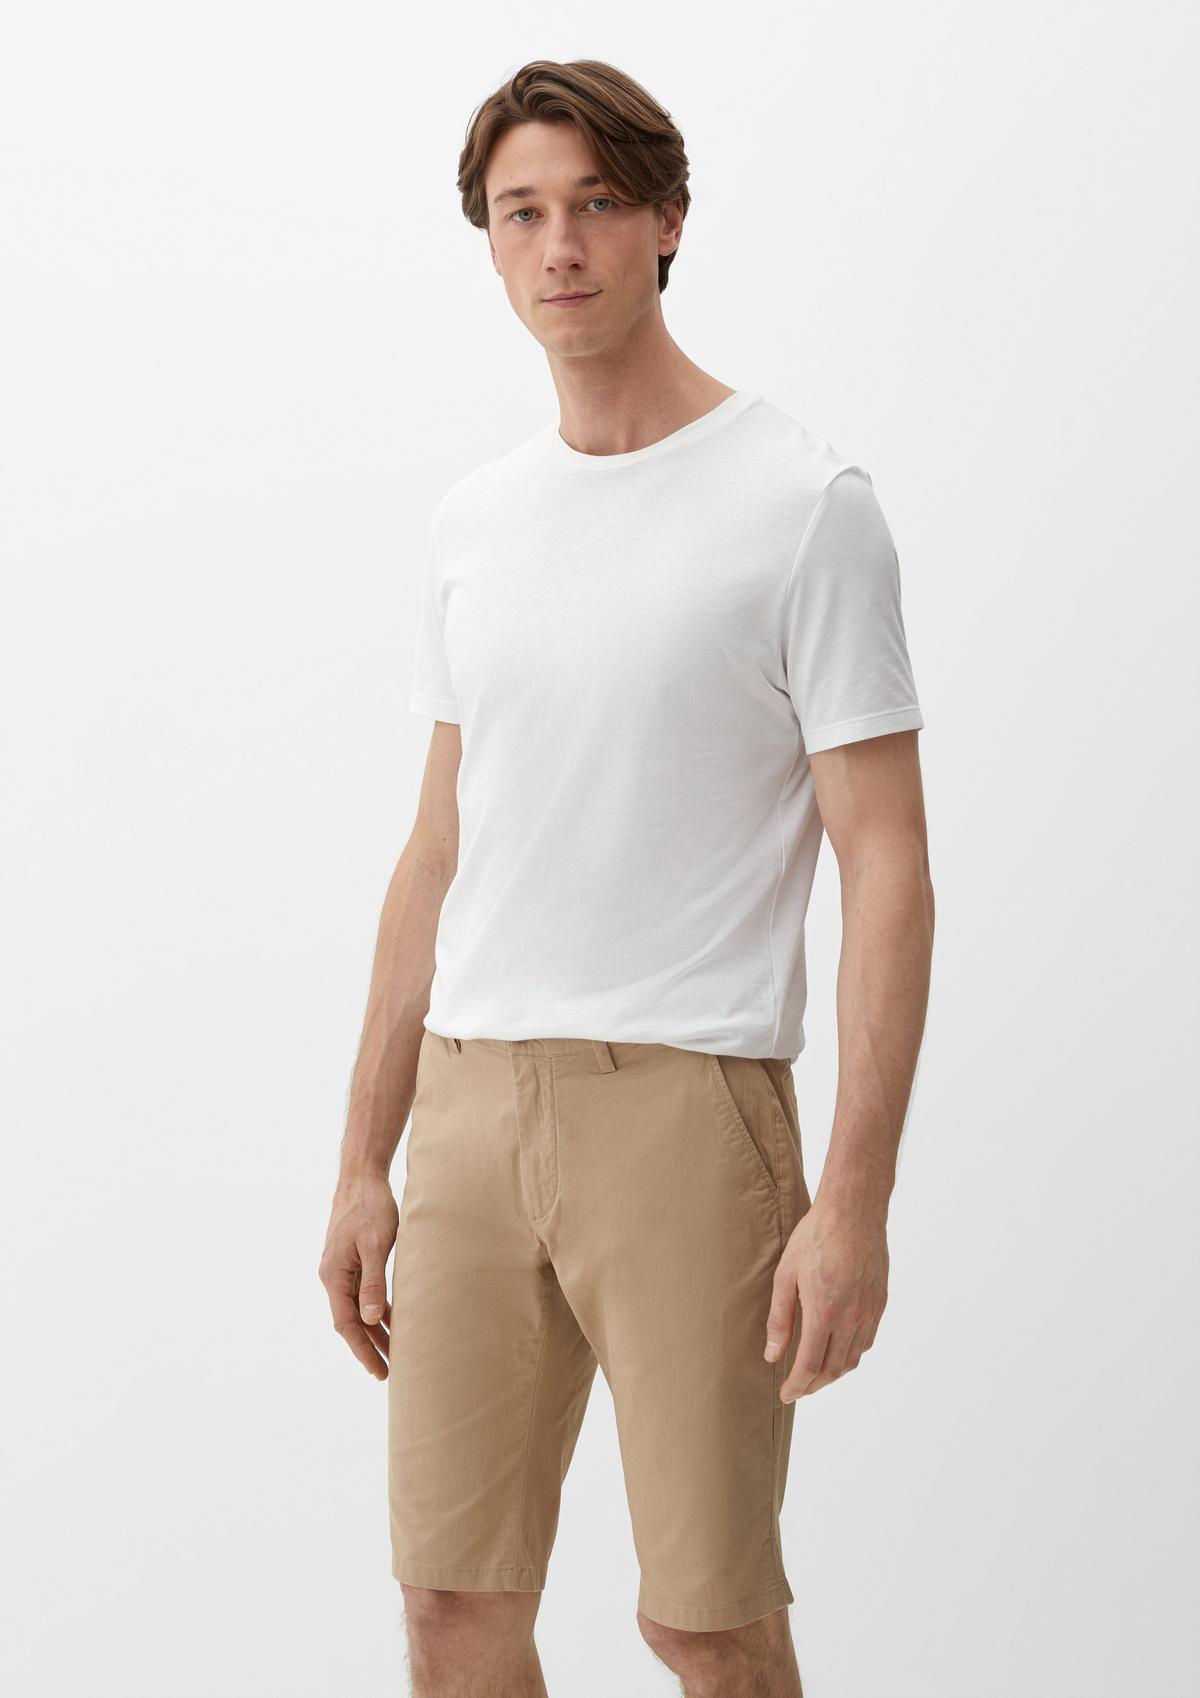 in shorts white Bermuda - linen blended